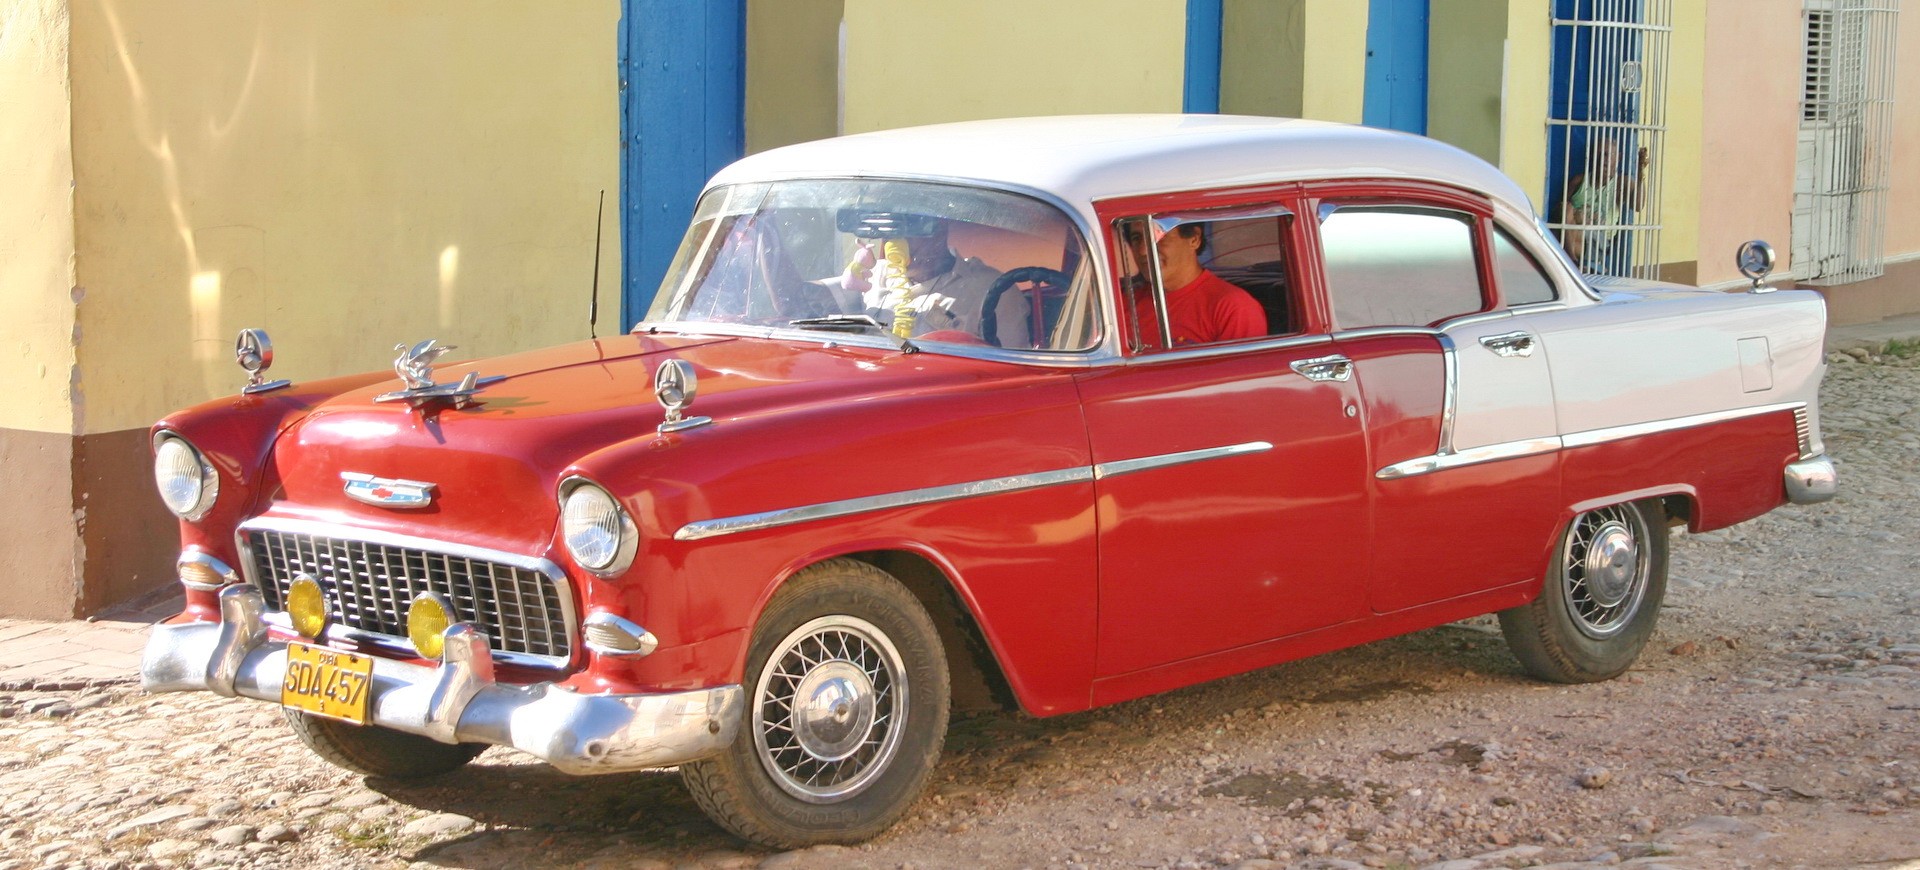 Cuba Trinidad vieille voiture américaine